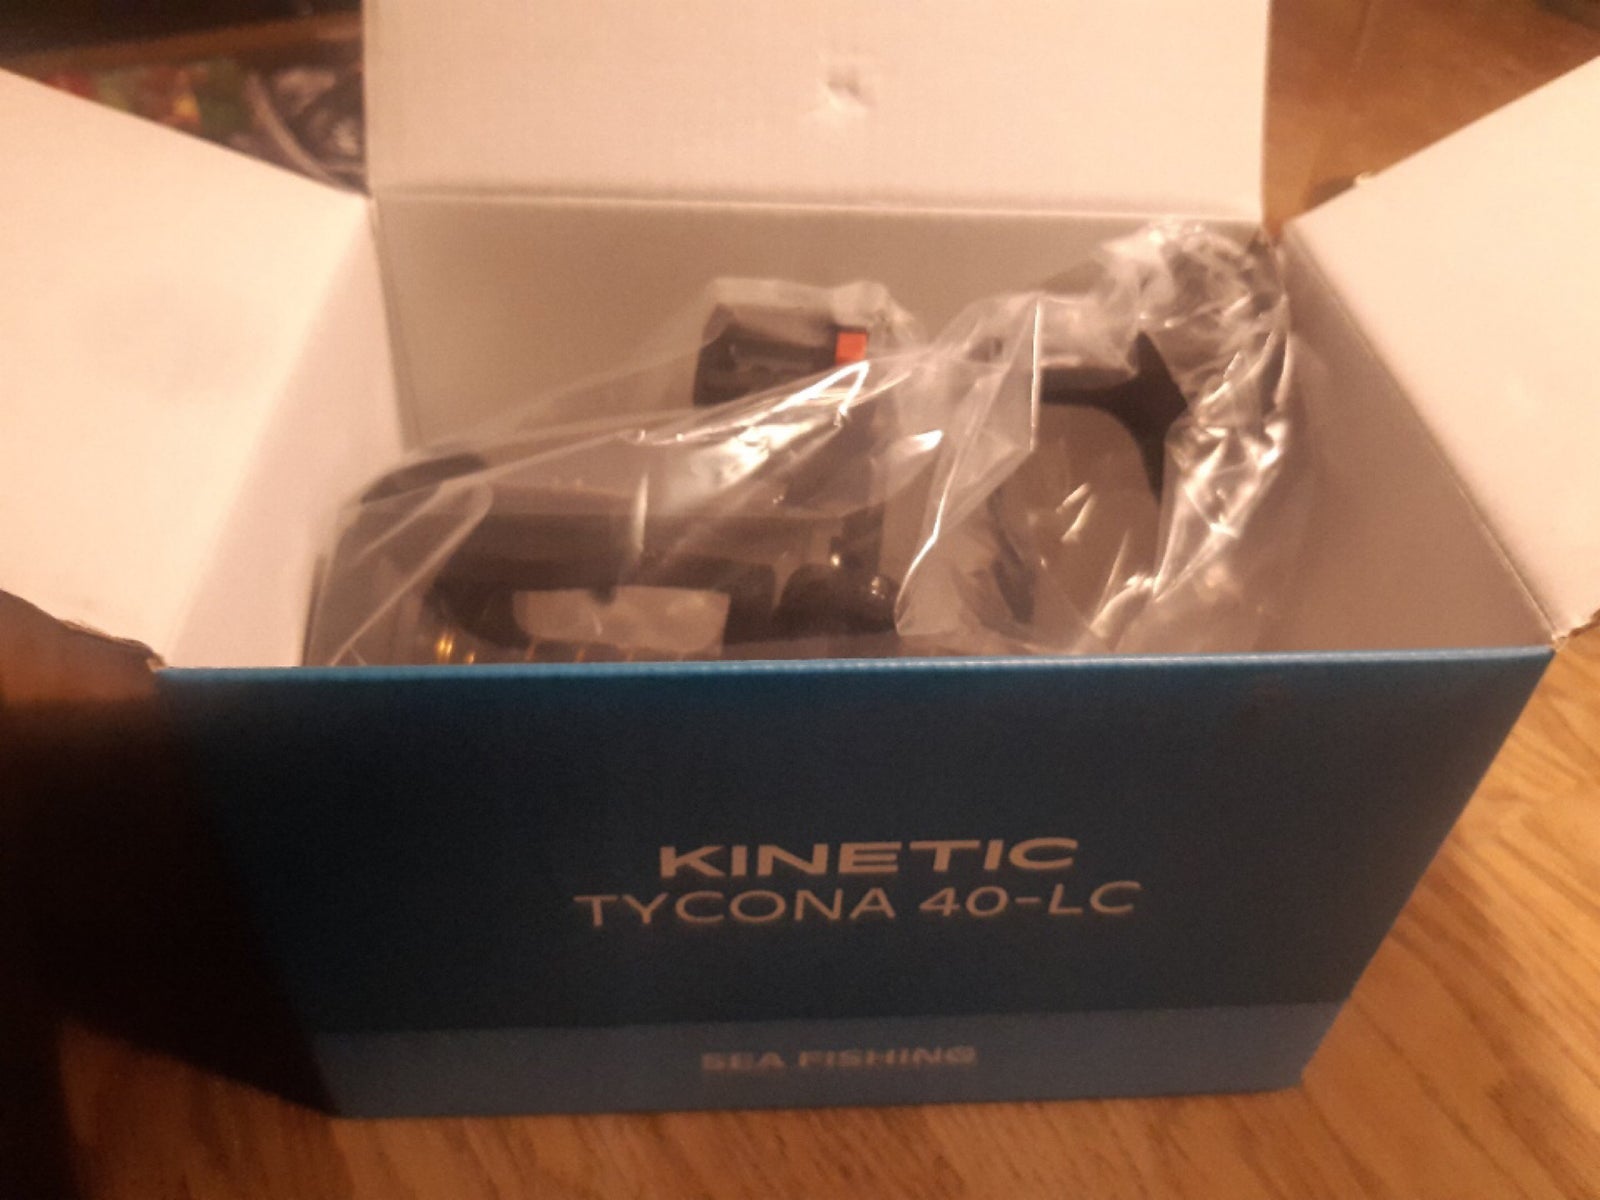 Kinetic, Tycona